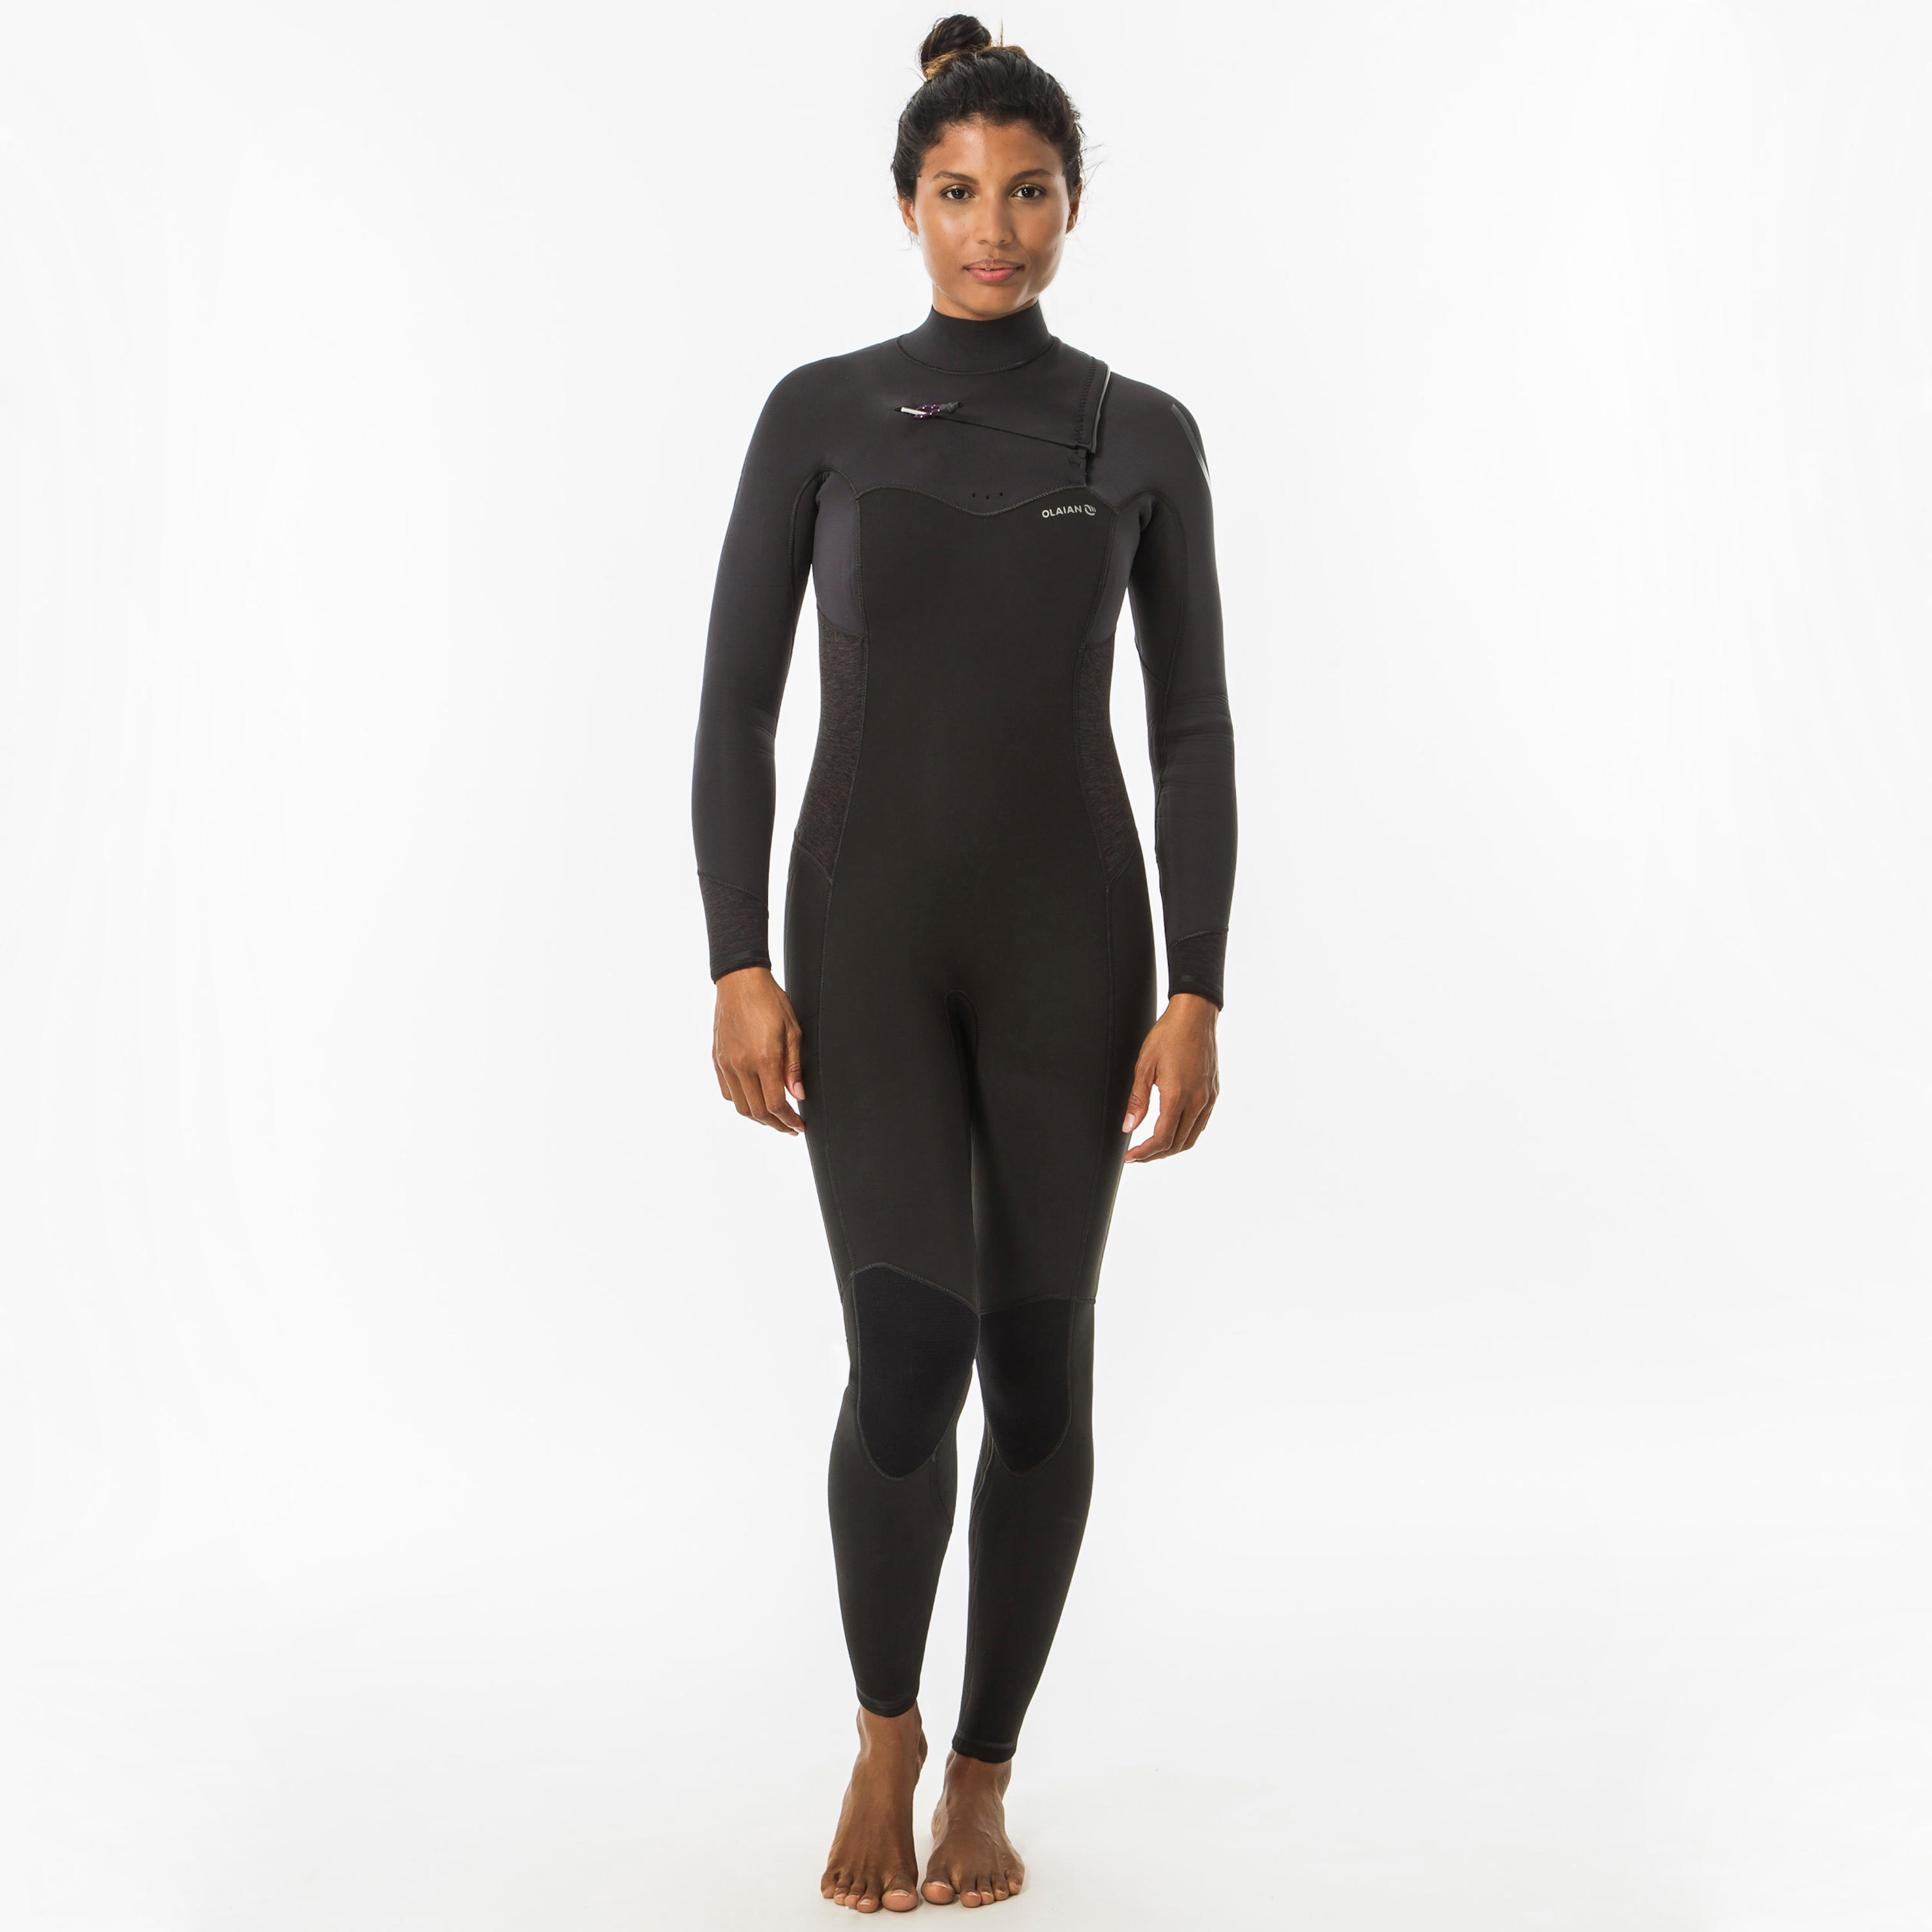 OLAIAN Neoprenanzug Surfen 900 4/3 mm Brustreißverschluss Damen schwarz/grau S